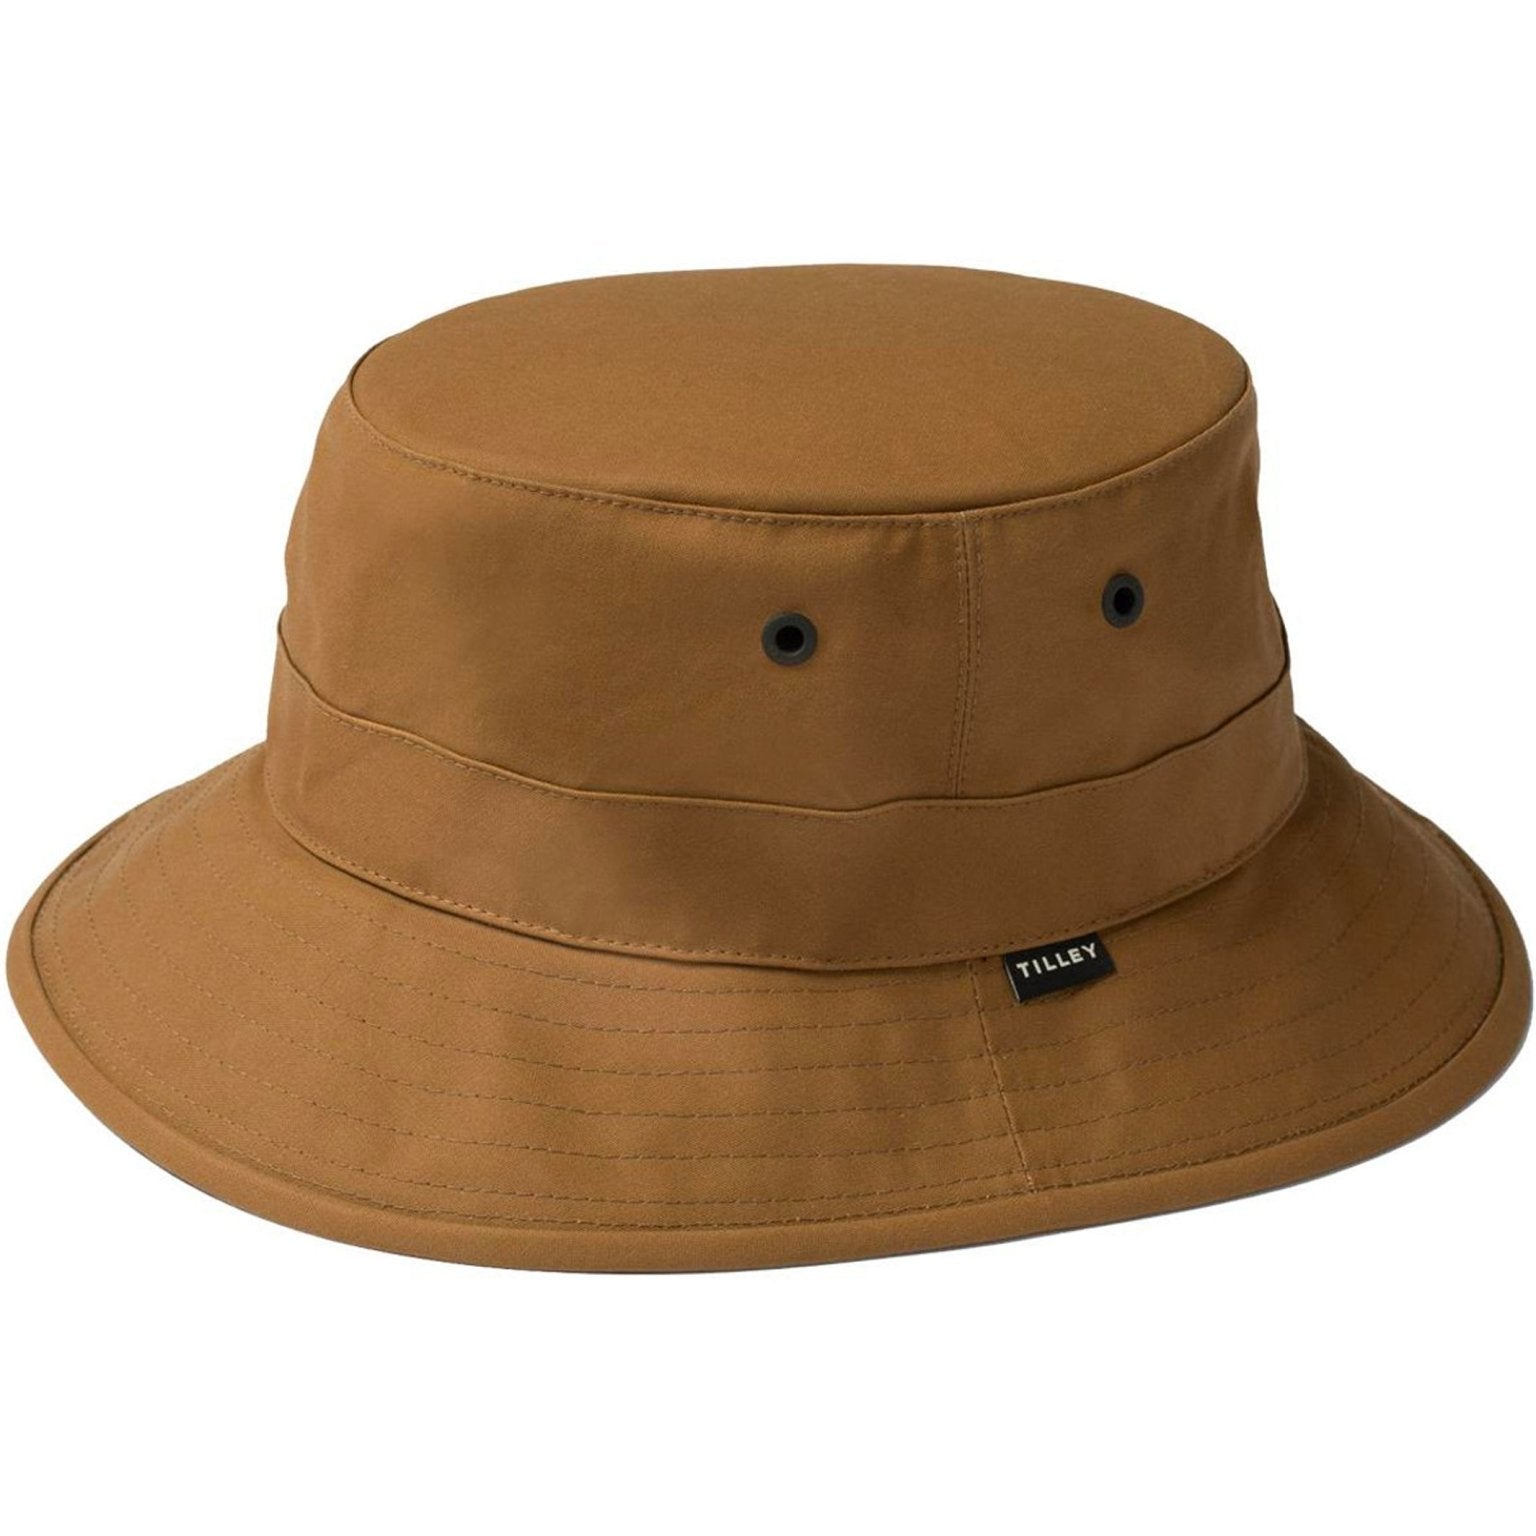 4elementsclothingTilleyTilley - Waxed Cotton Bucket Hat / Tilley Sun hatHats826486582881